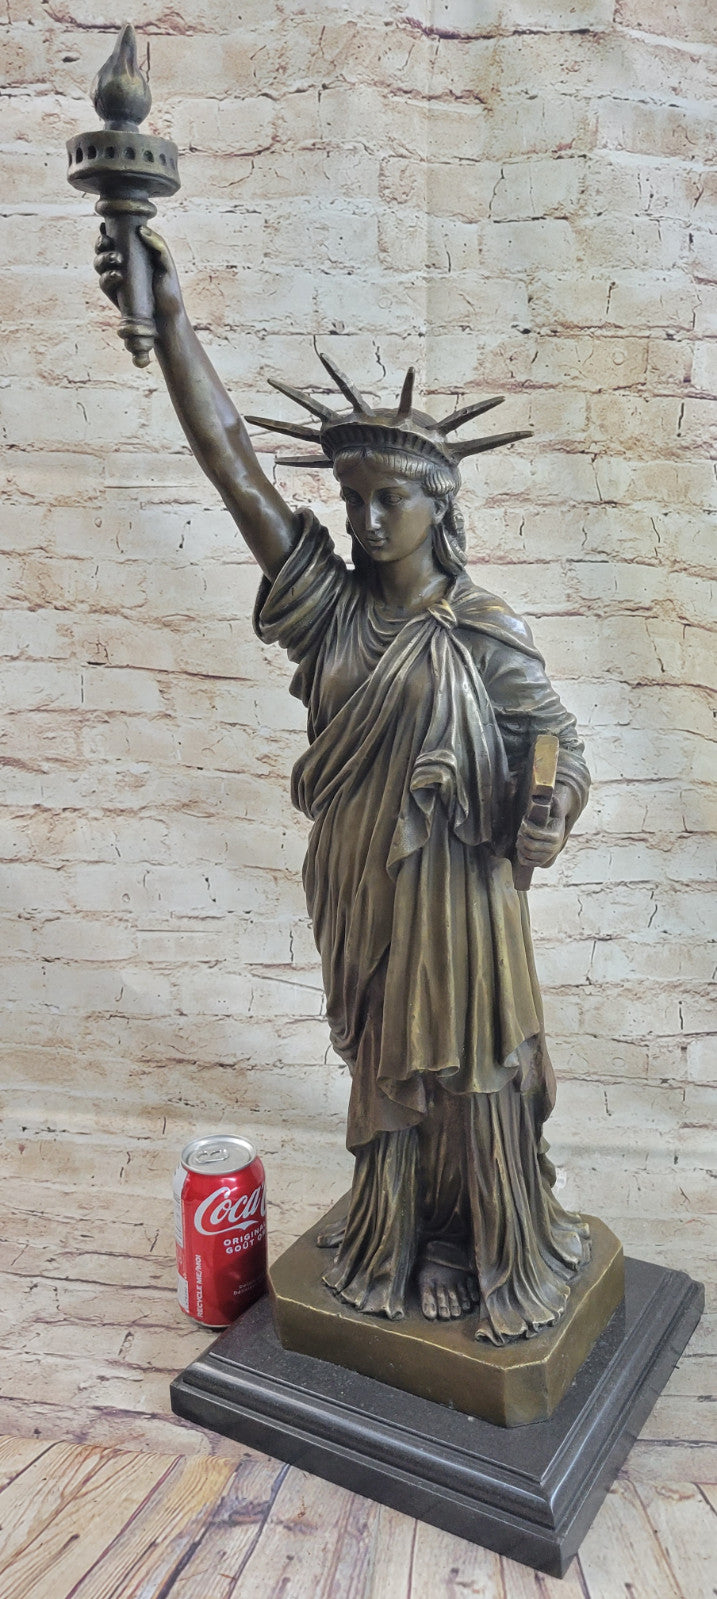 32" Massive Statue of Liberty New York Memorabilia Home Office Bronze Decor